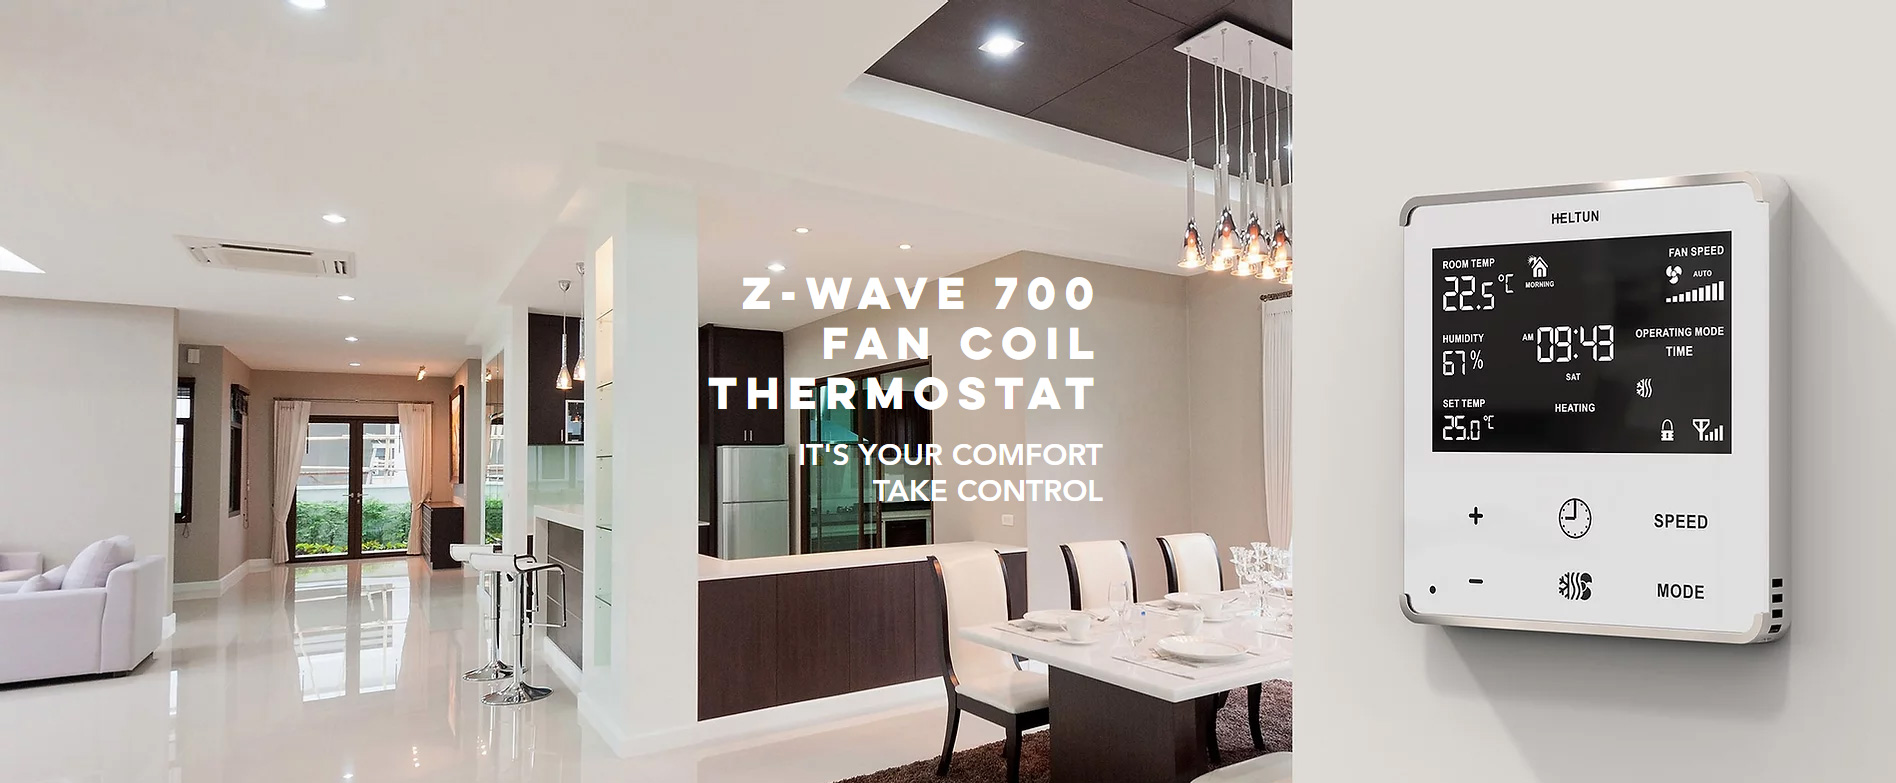 Heltun - Thermostat für elektrische Heizung Z-Wave 700